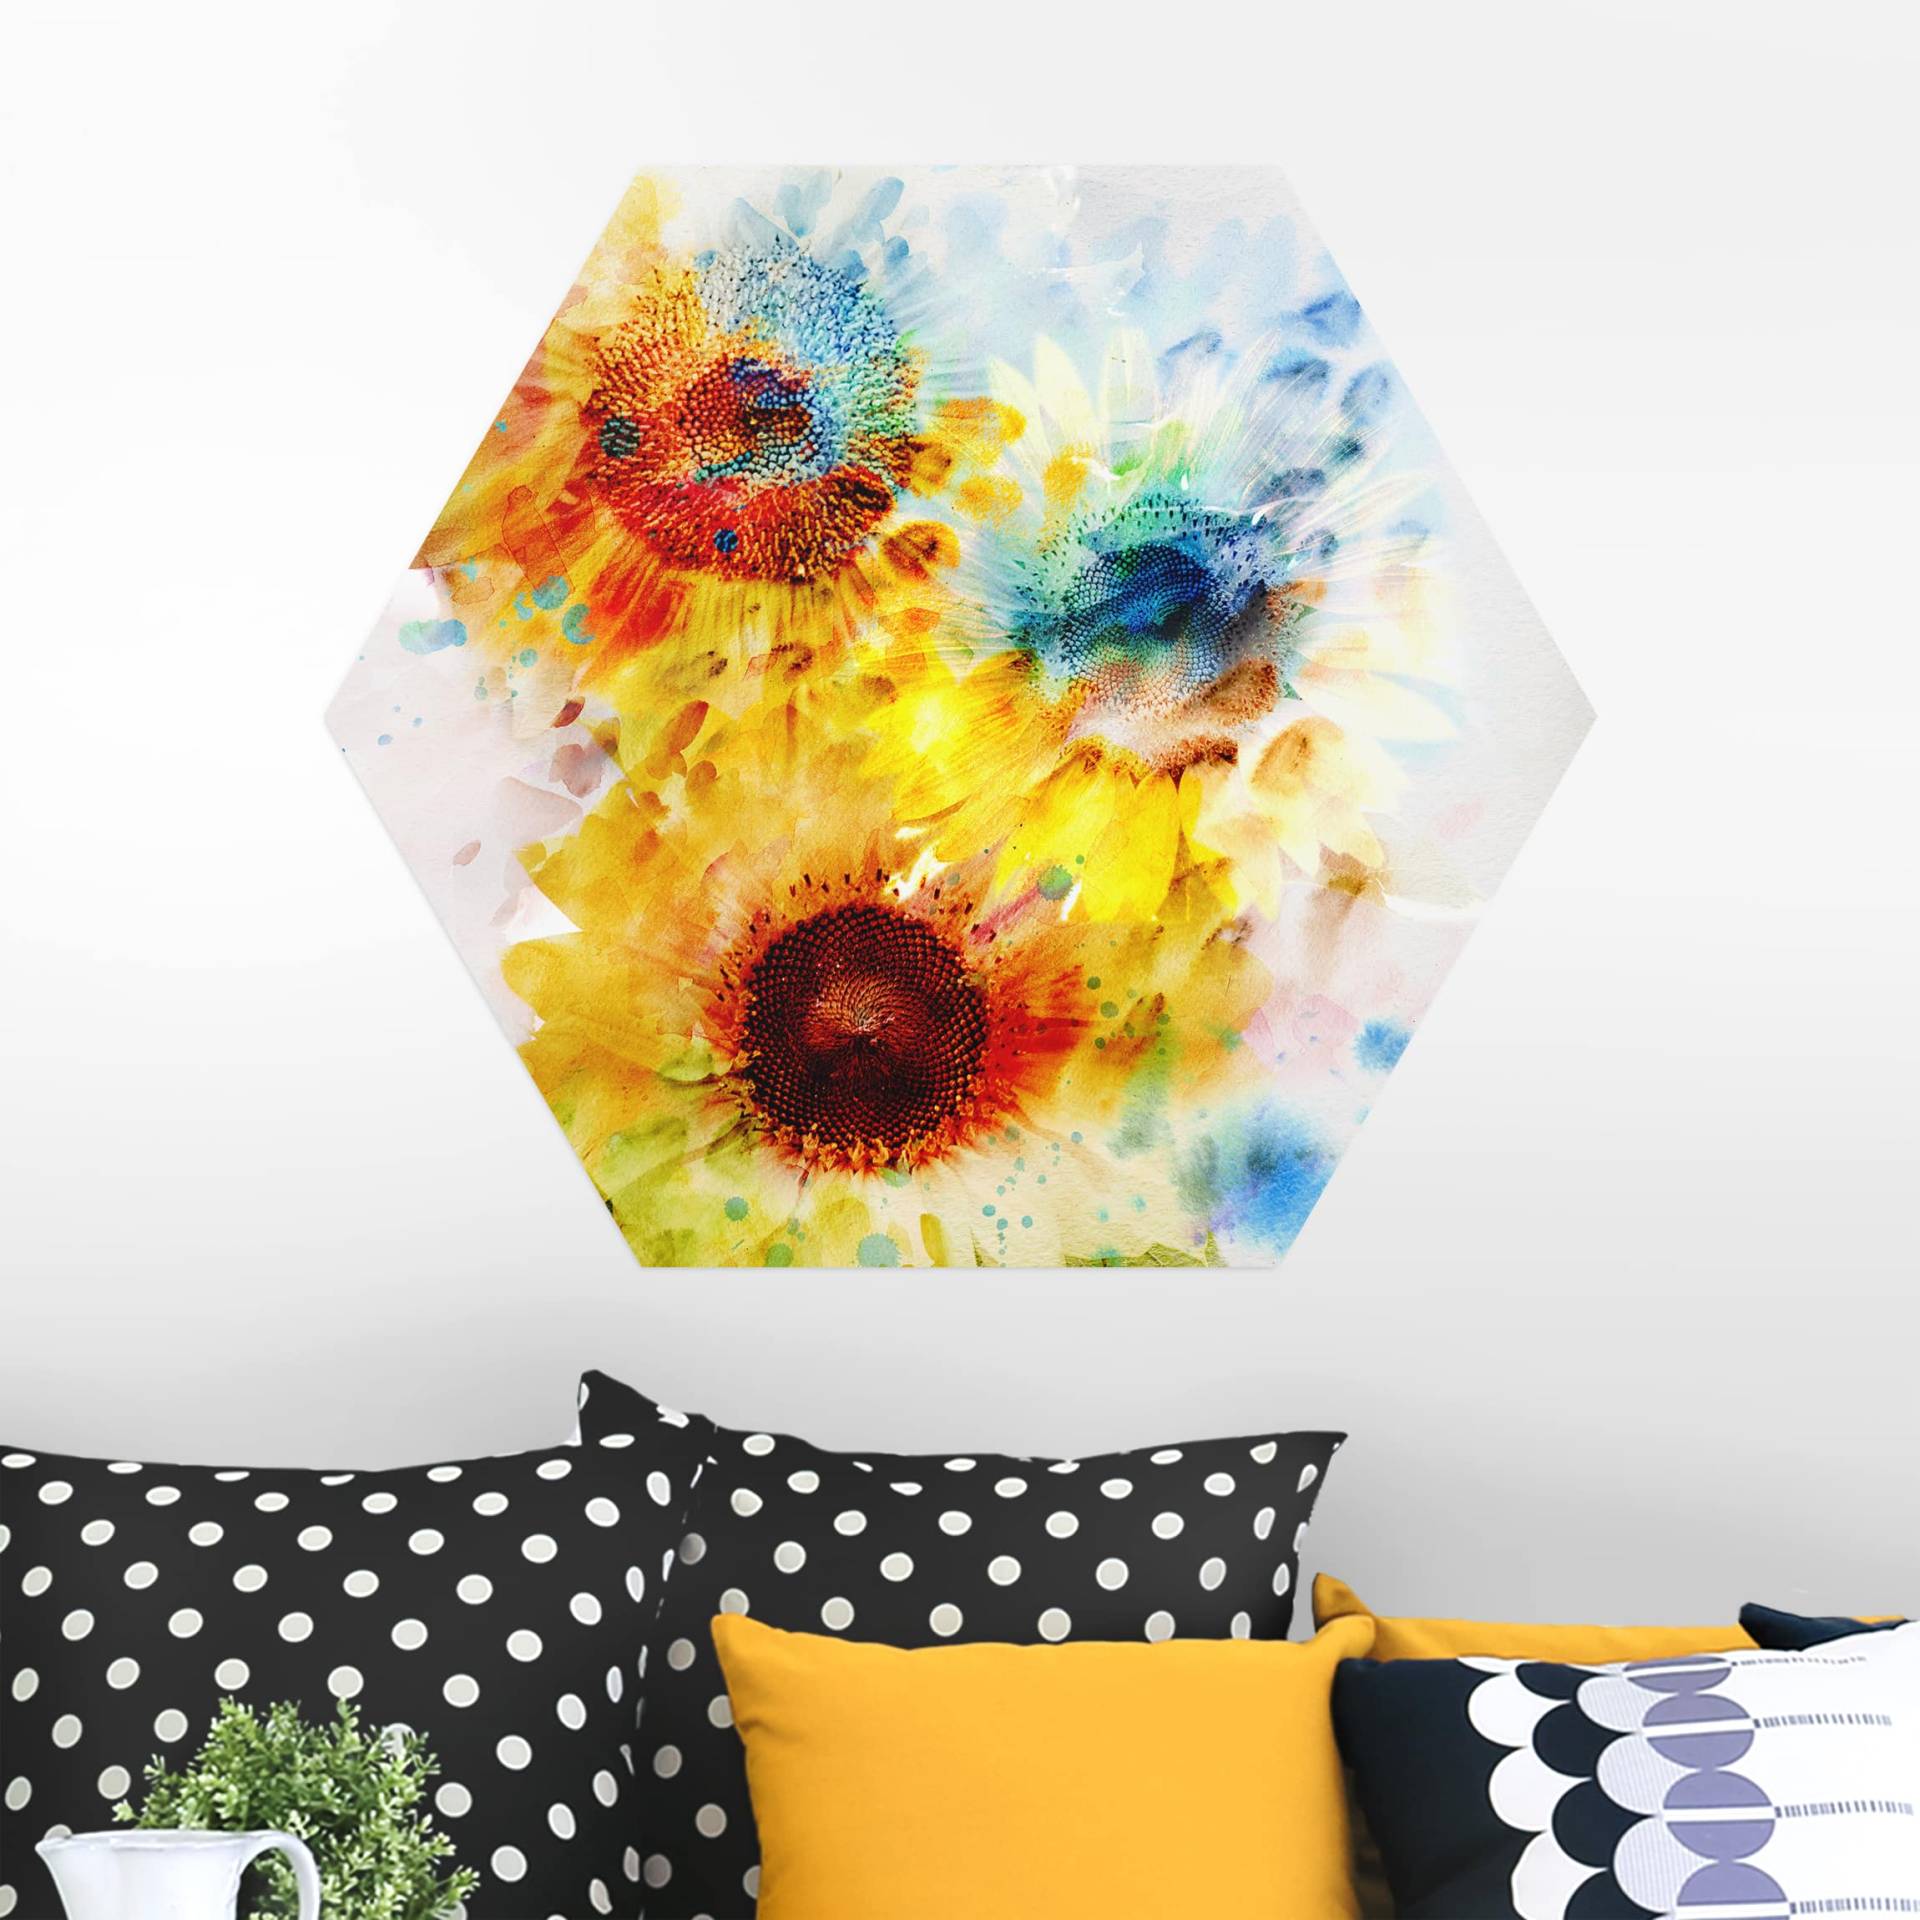 Hexagon-Alu-Dibond Bild Aquarell Blumen Sonnenblumen von Klebefieber